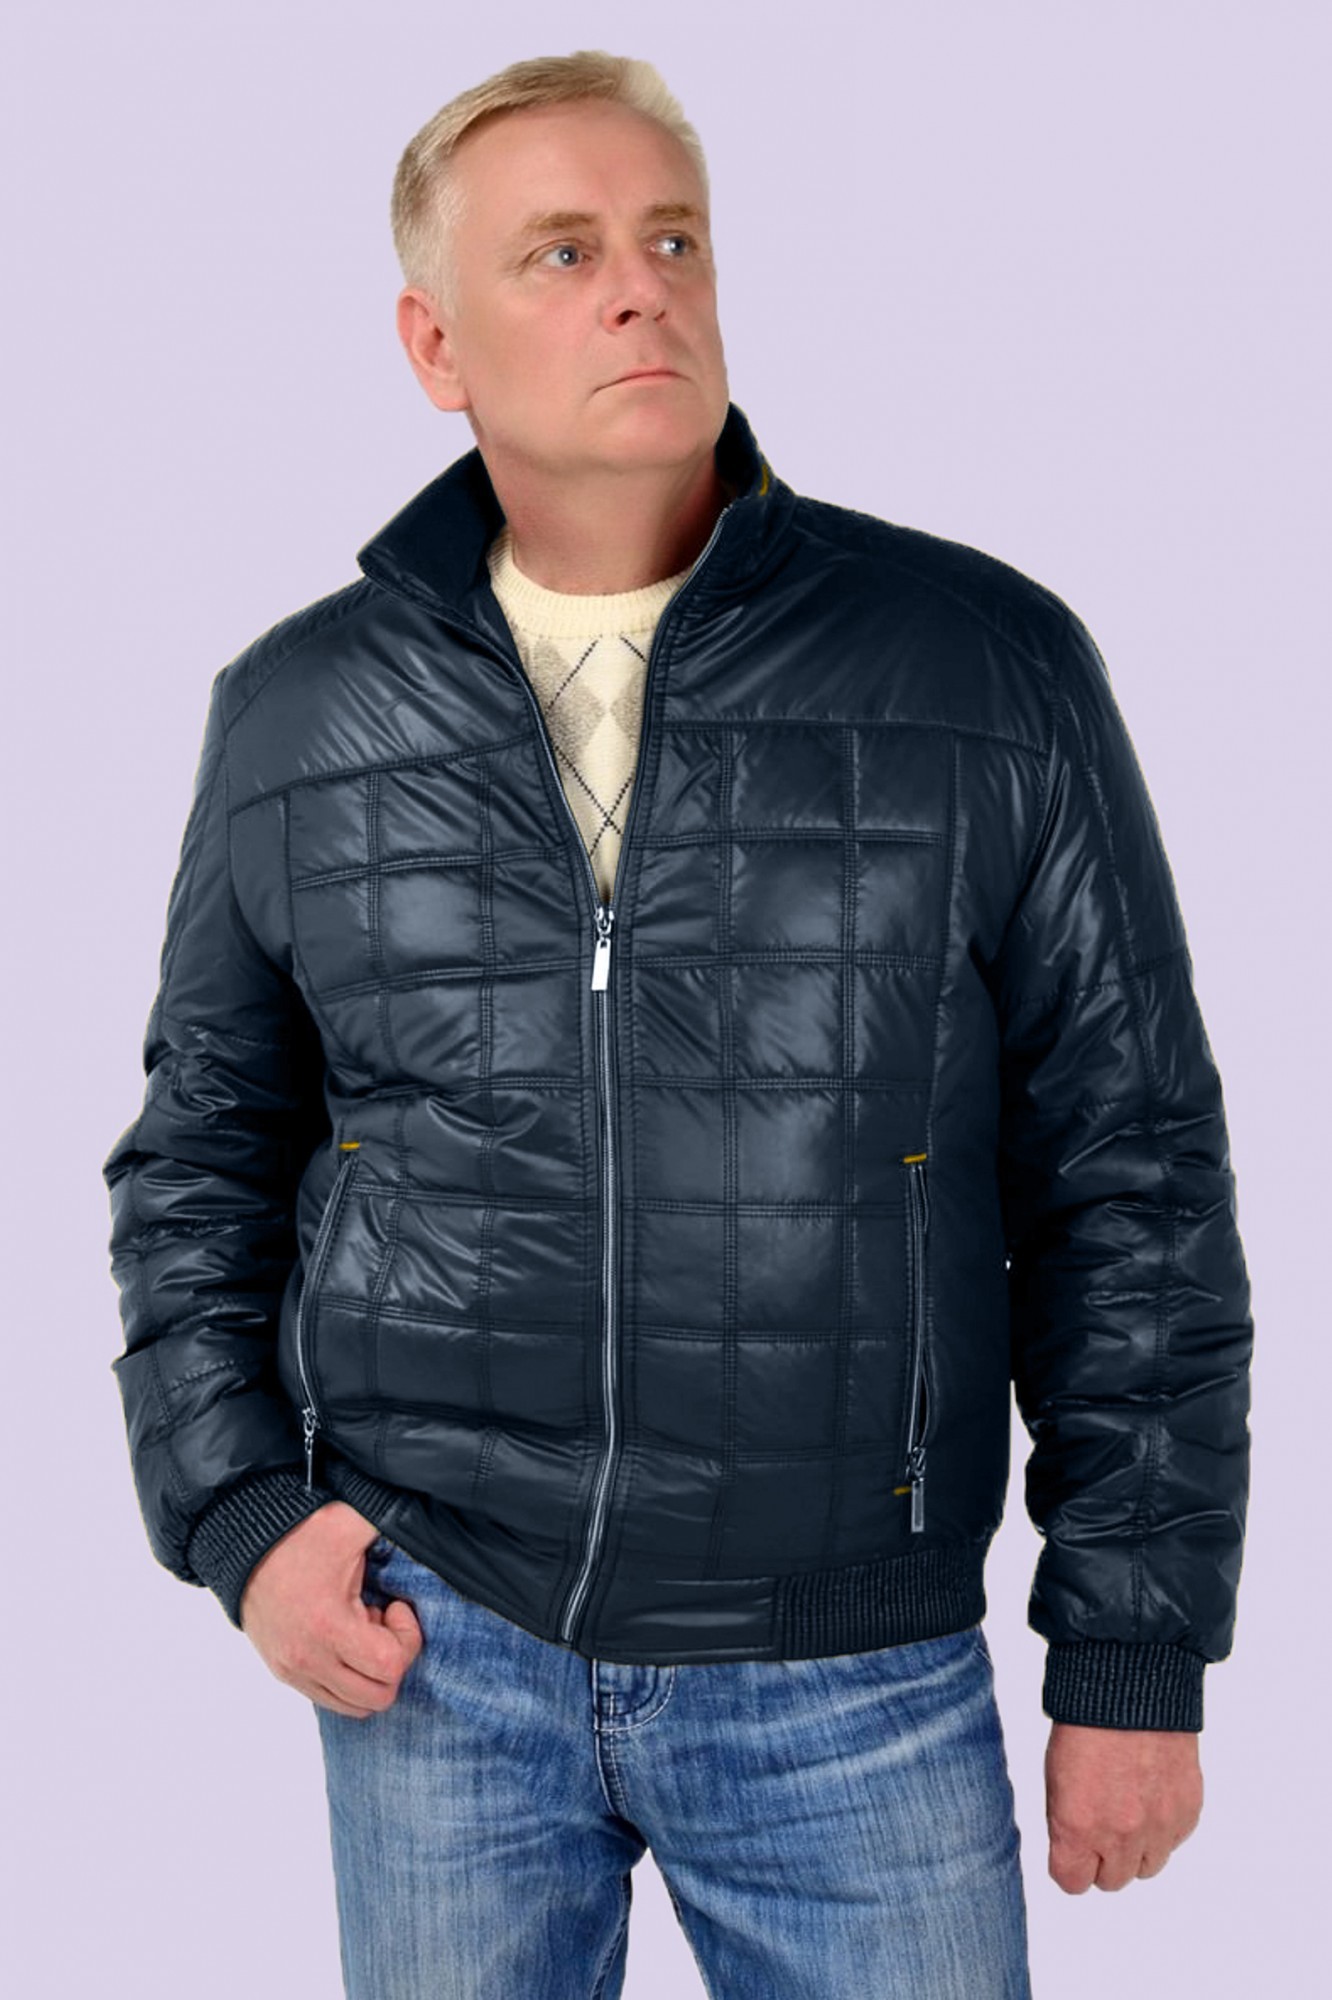 Недорогой мужской интернет магазин. Куртка мужская Dutymen размер 60-62 зима. Валберис мужские куртки демисезонные. Баон куртки мужские демисезонные 60 размера. Мужские куртки больших размеров.